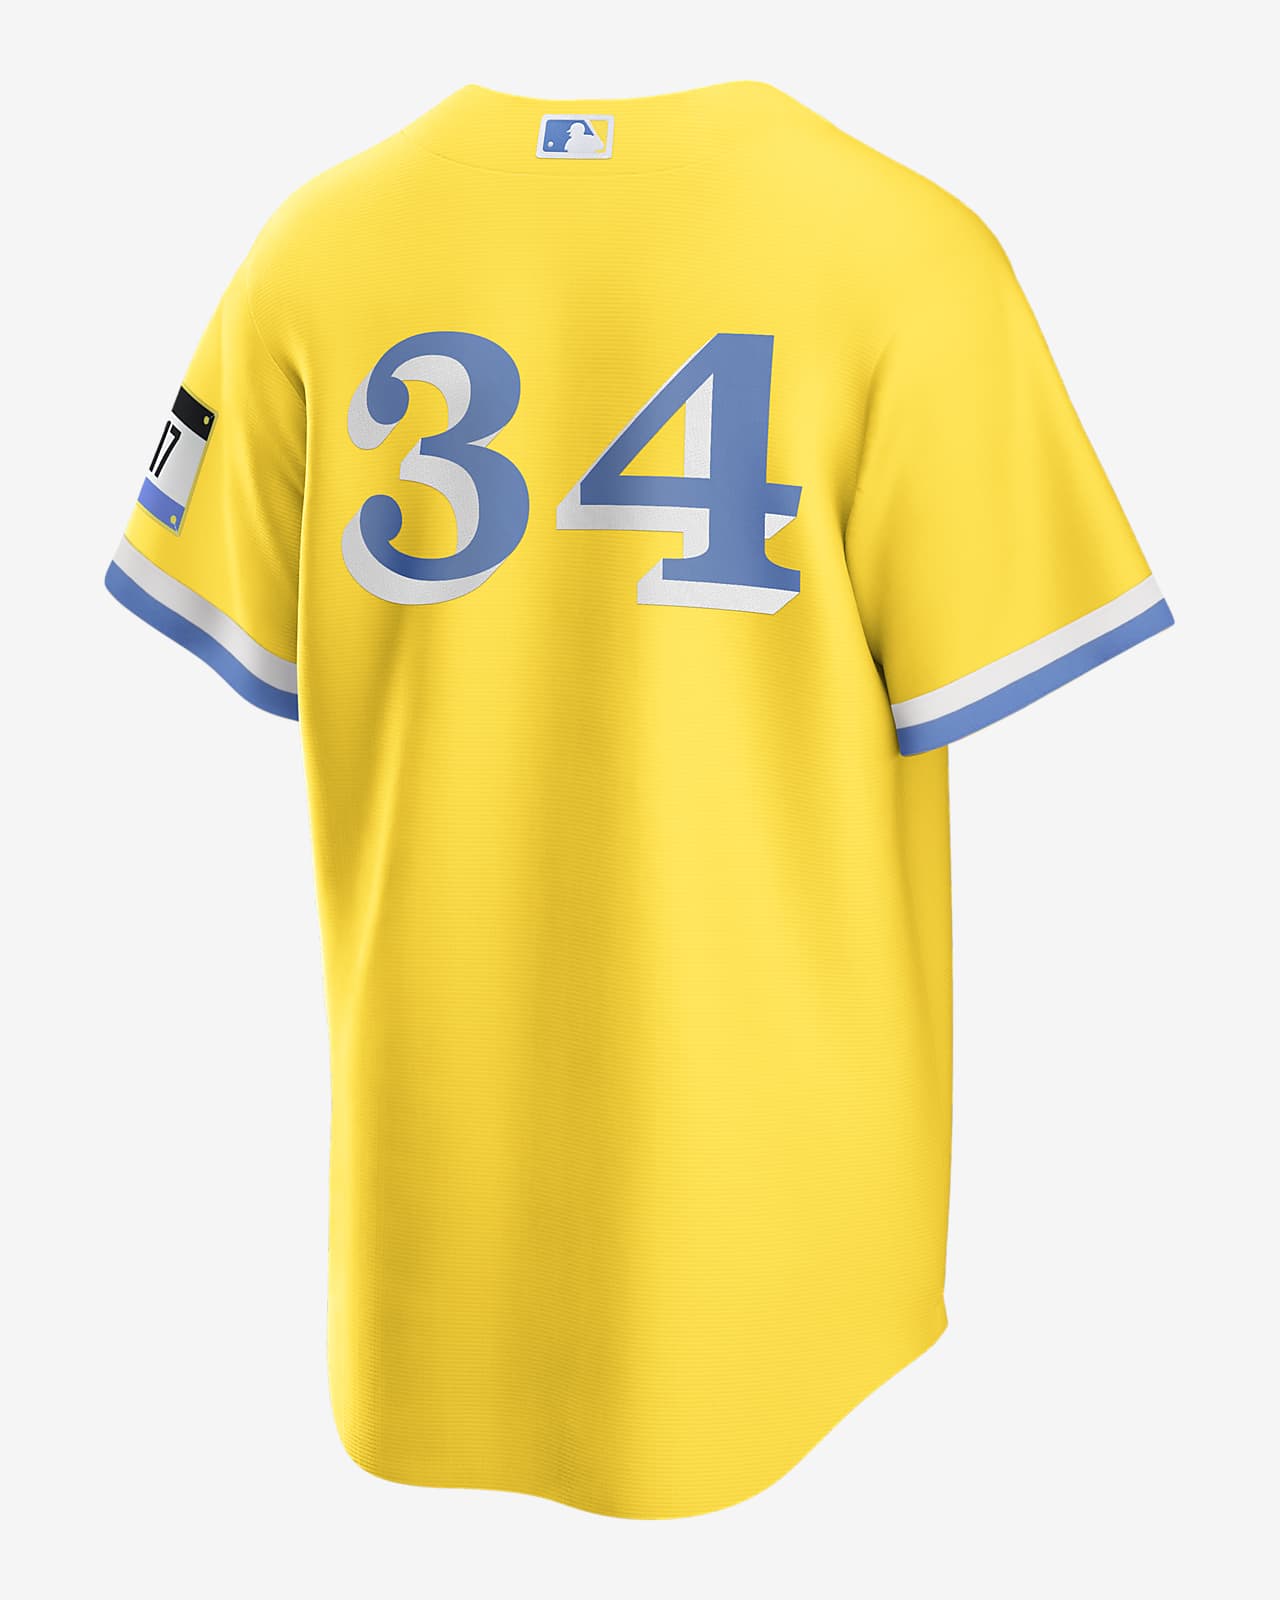 Camiseta de béisbol réplica para hombre MLB Oakland Athletics.